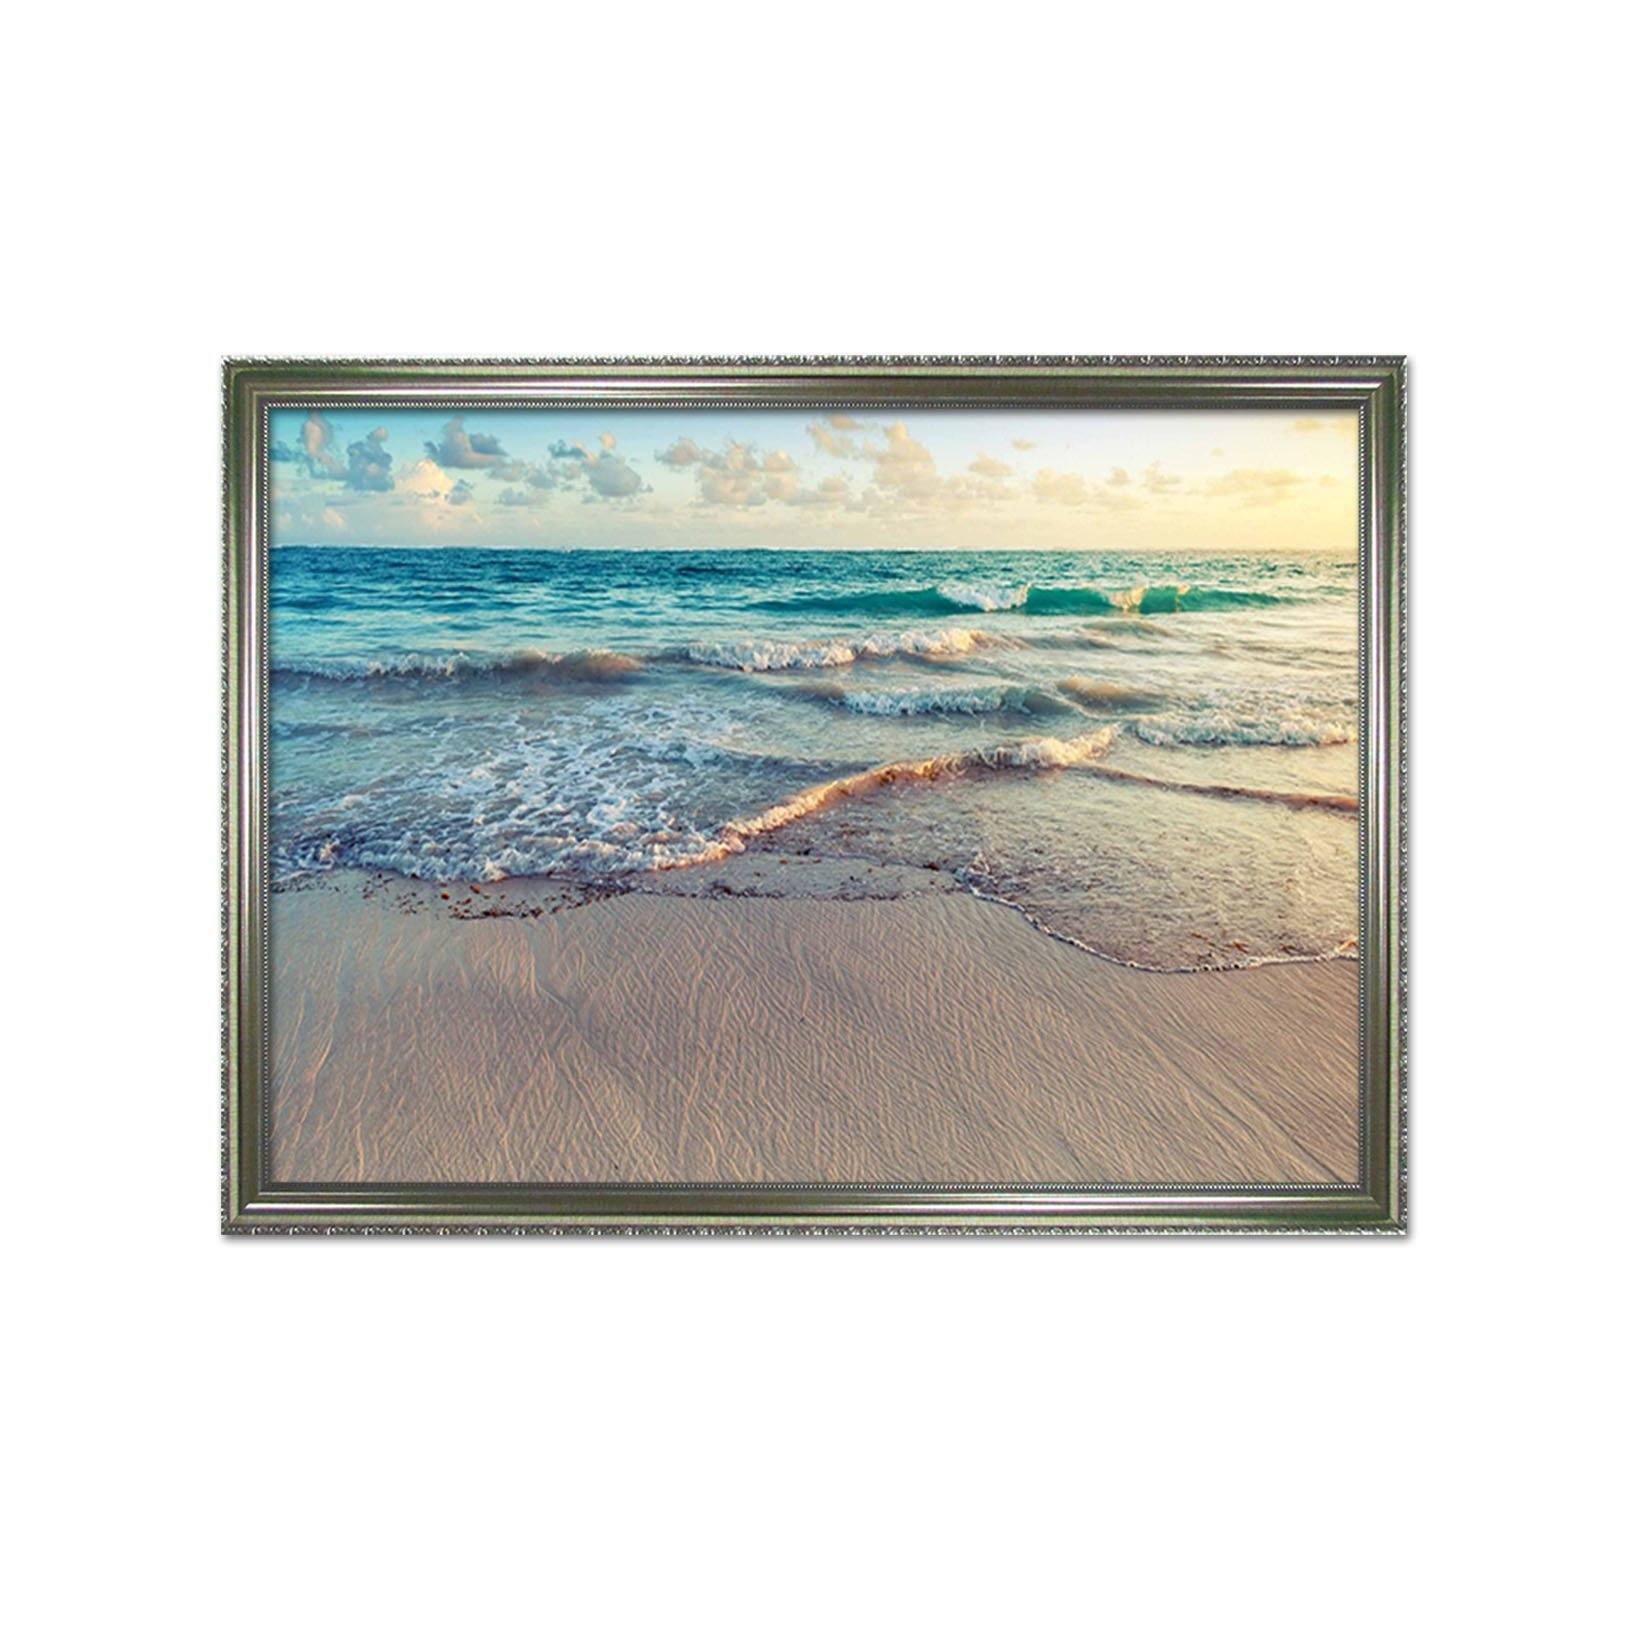 3D Sea Beach 181 Fake Framed Print Painting Wallpaper AJ Creativity Home 